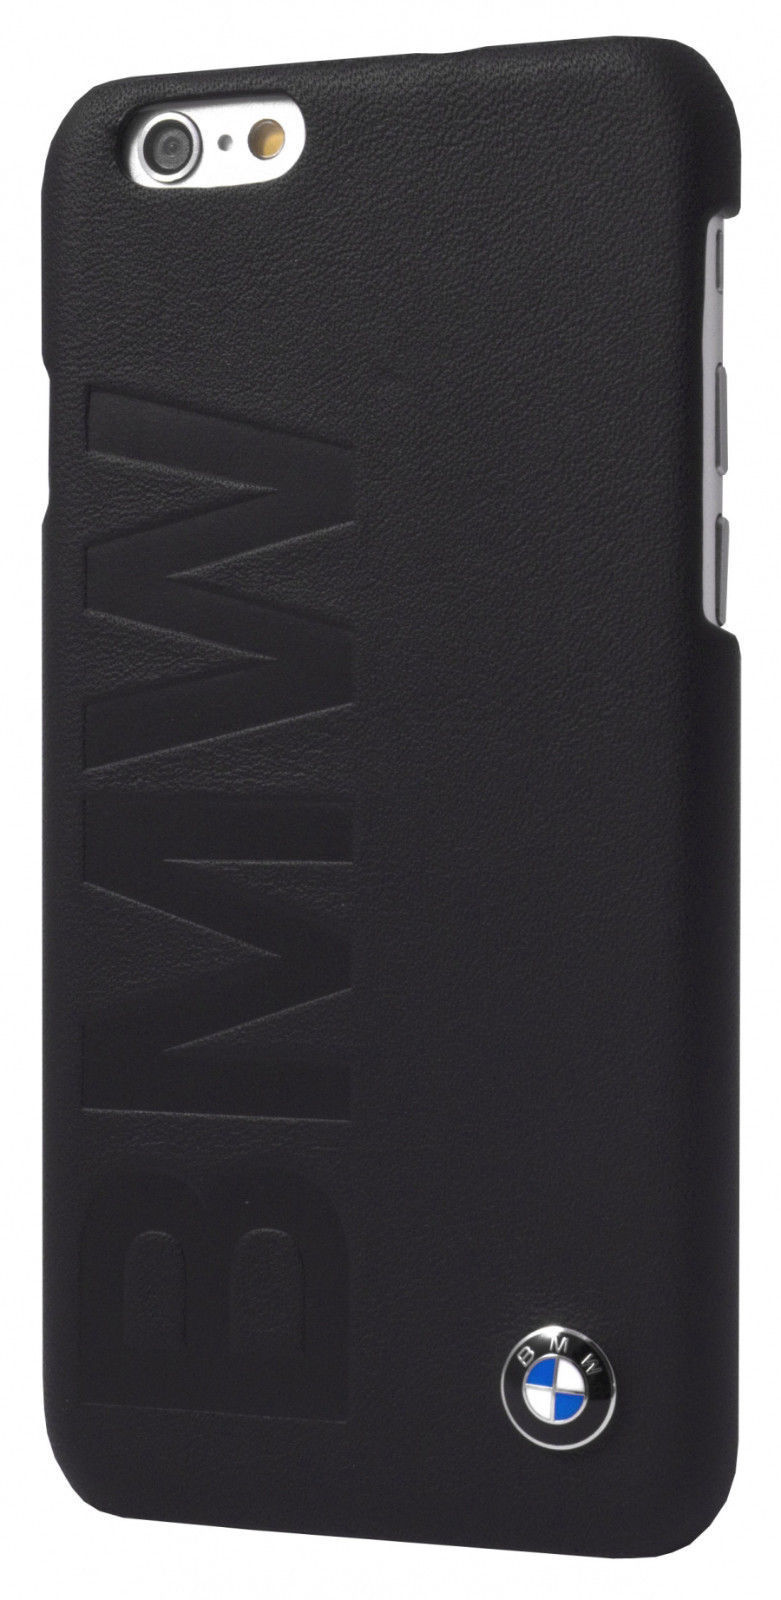 Meander Belastingbetaler Vesting BMW Official iPhone 6 6S Debossed Logo Signature Collection Black Leather  Case